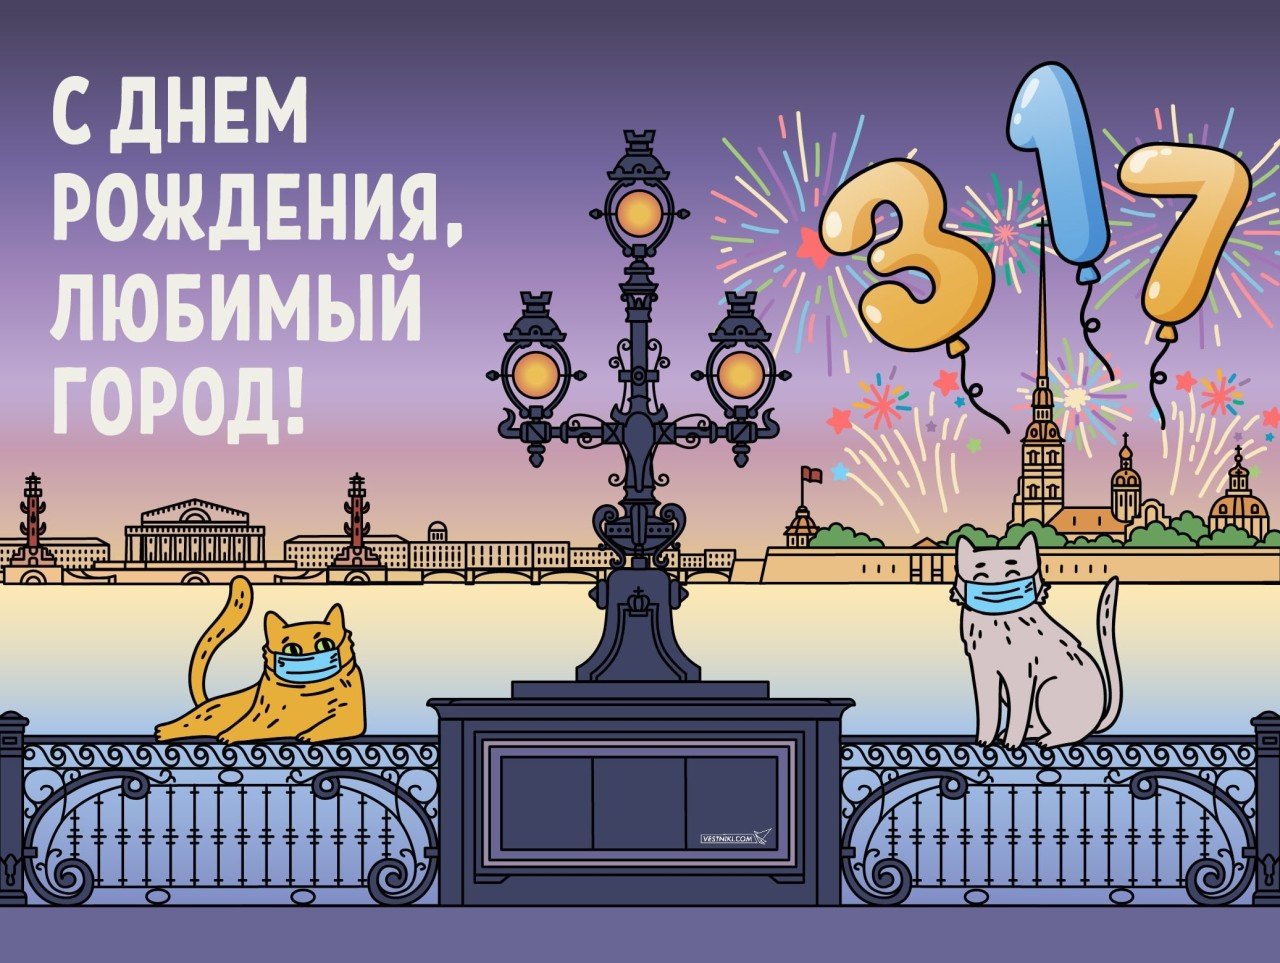 С днём рождения любимый город Санкт-Петербург